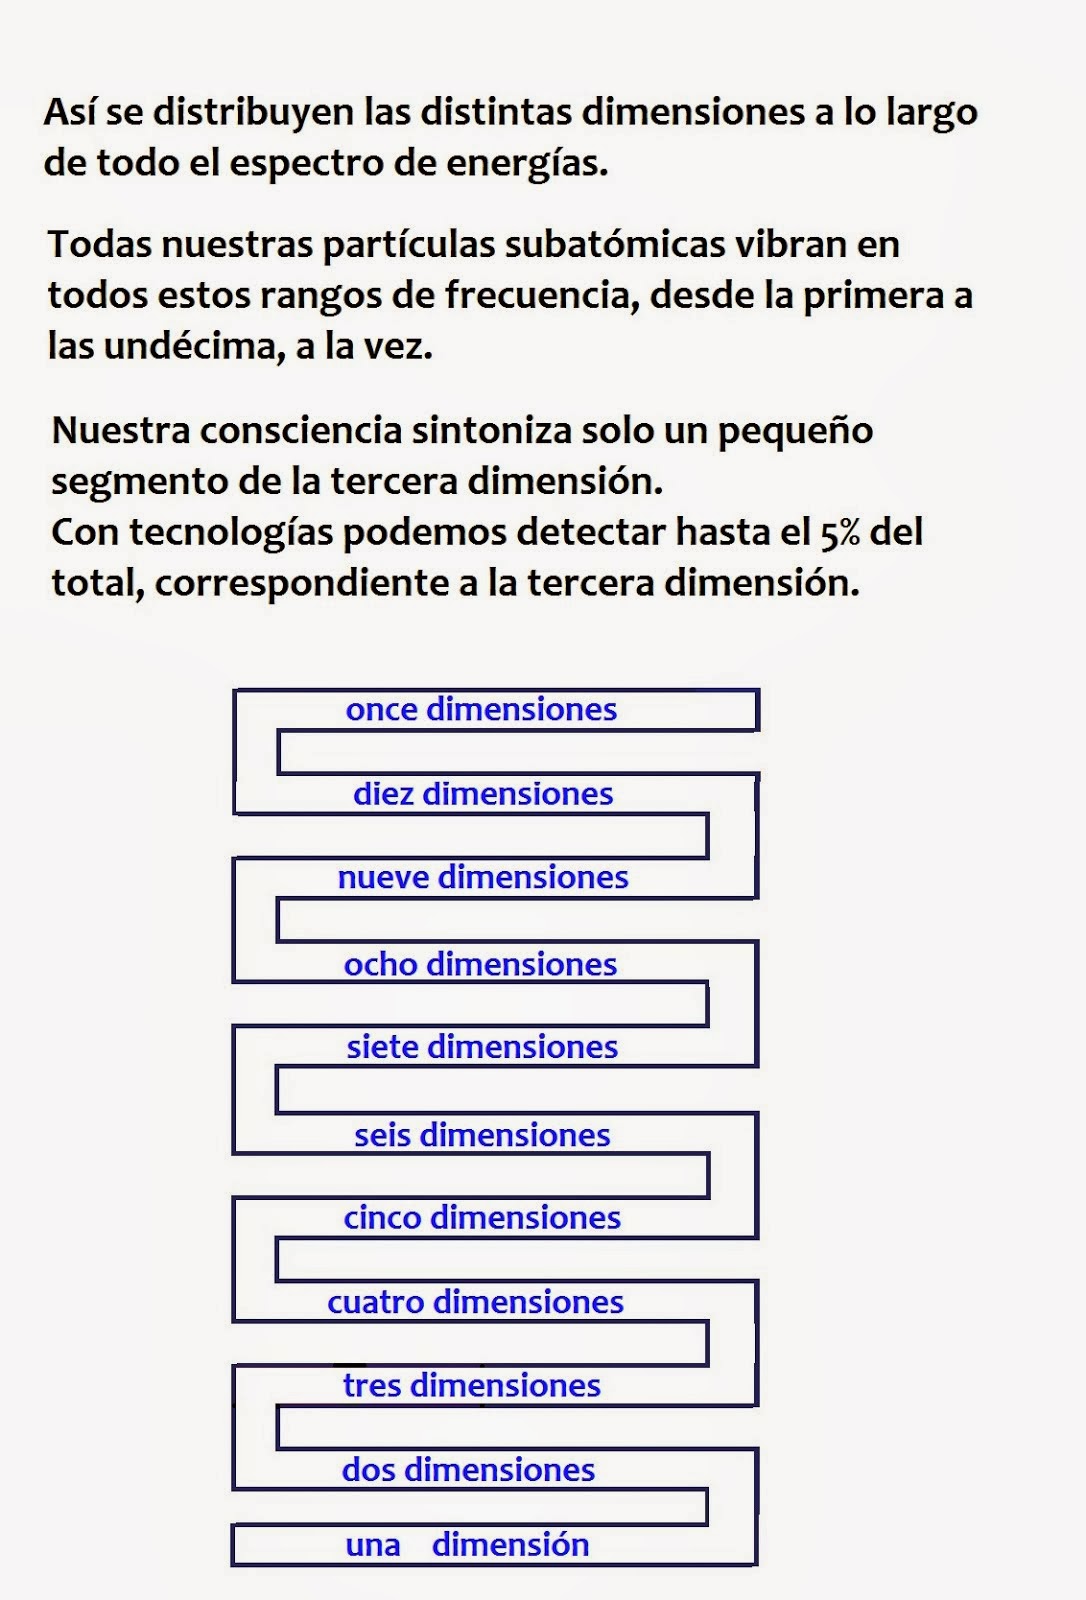 Las dimensiones según el rango de frecuencias.